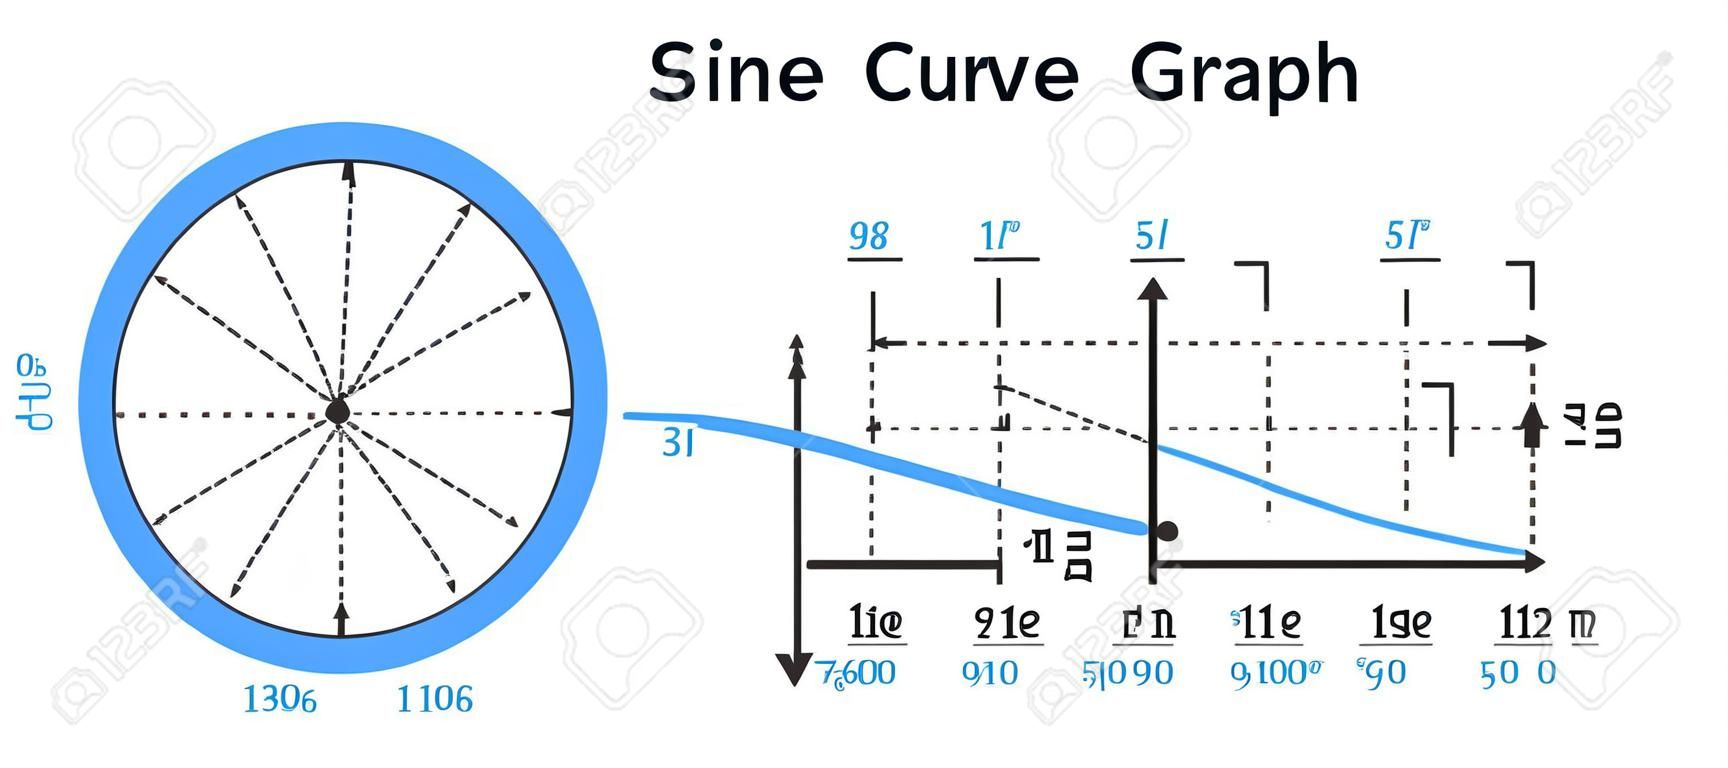 Wektorowa ilustracja matematyczna krzywej sinusoidalnej na wykresie lub wykresie i okręgu jednostkowym pokazującym wykres sinusoidalny. funkcja gonometryczna lub goniometryczna. ikona jest izolowana na białym tle. funkcja sinusoidalna, fala, kąt.